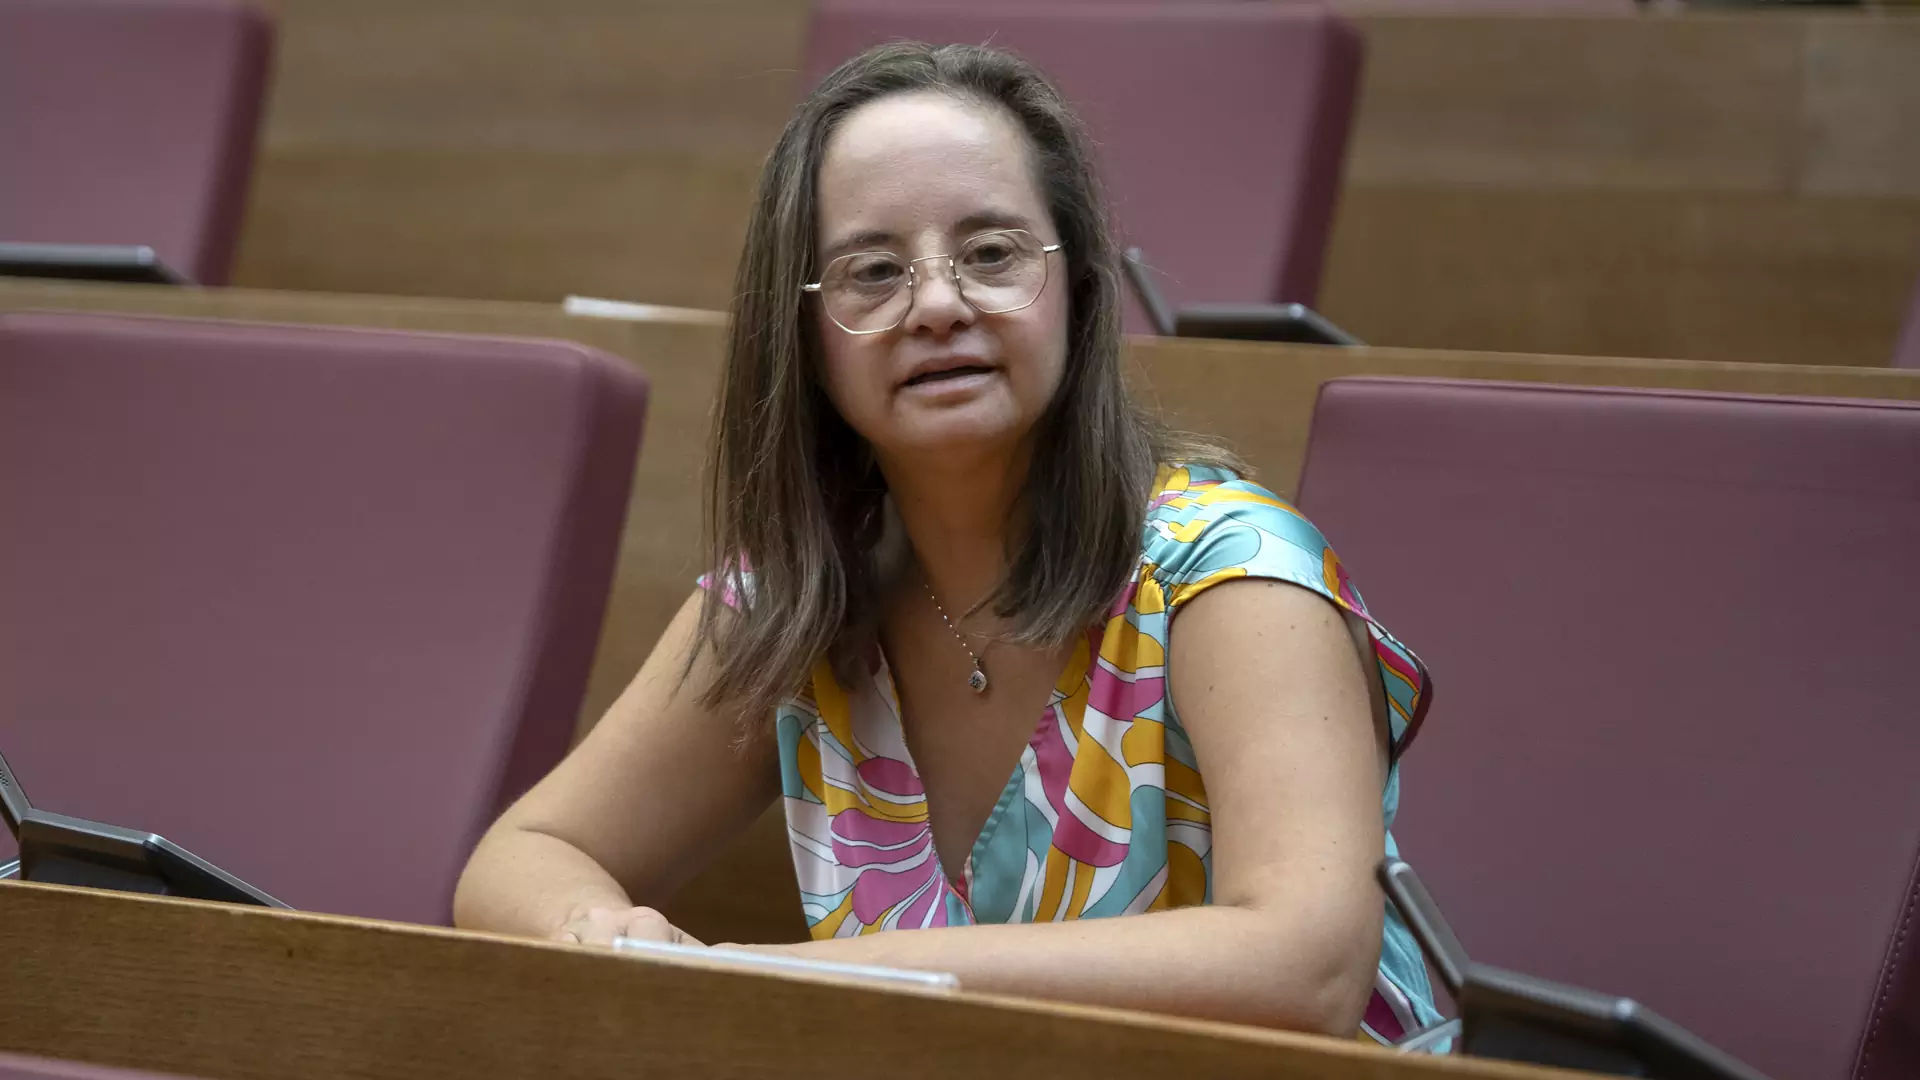 Parlamentarzystka z zespołem Downa w Hiszpanii. "Przykład tego, co jest możliwe"